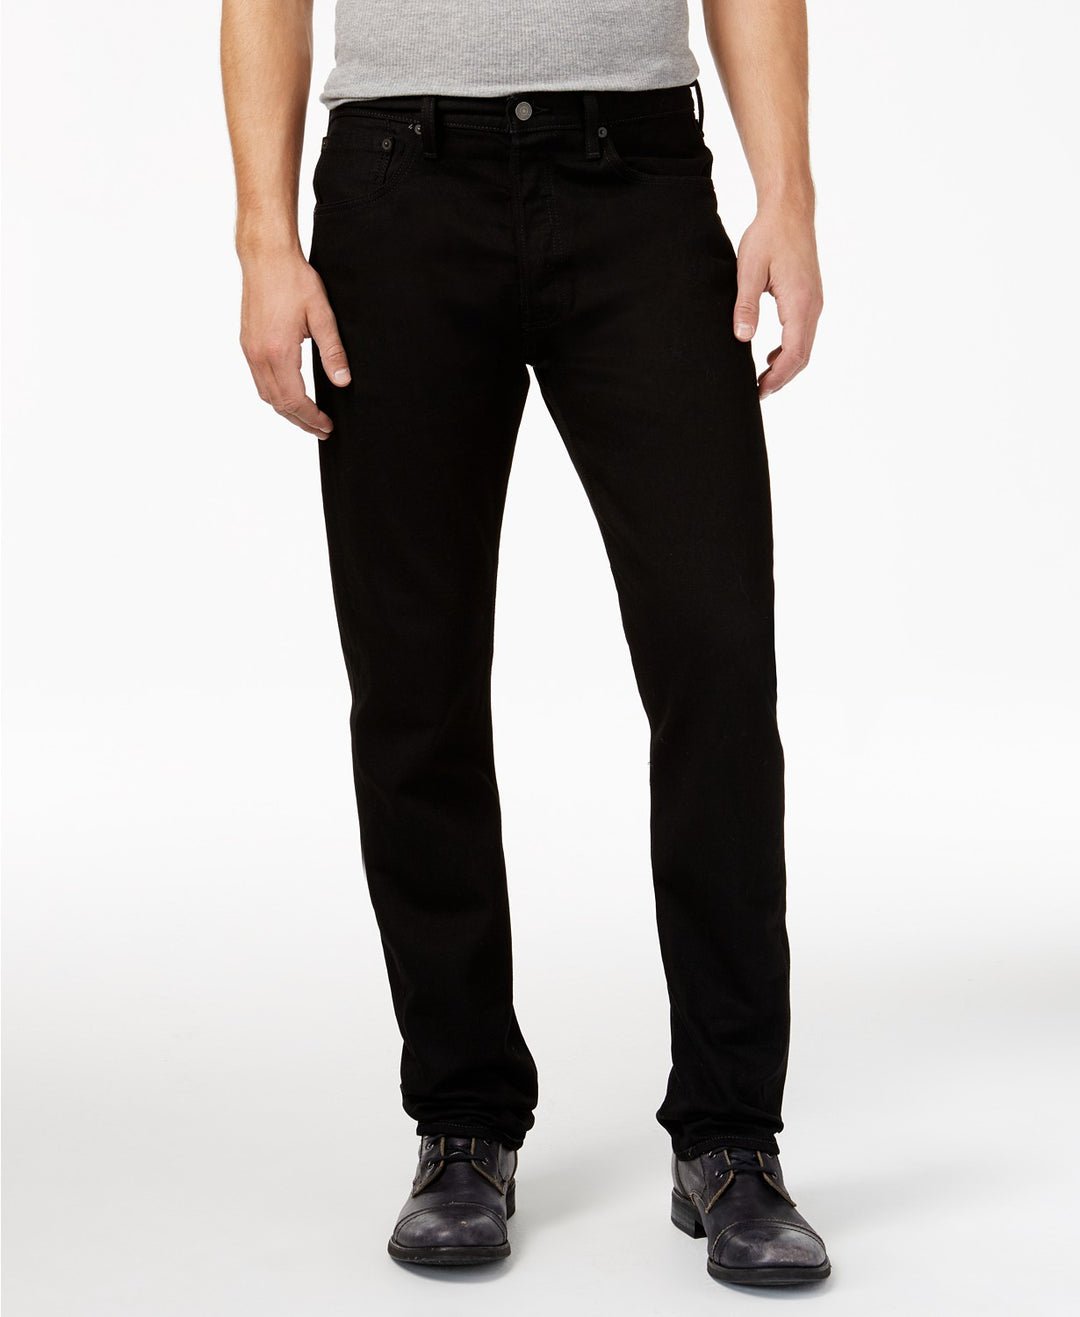 Jeans da uomo 501 con vestibilità originale nera con bottoni Jean - 00501-0660